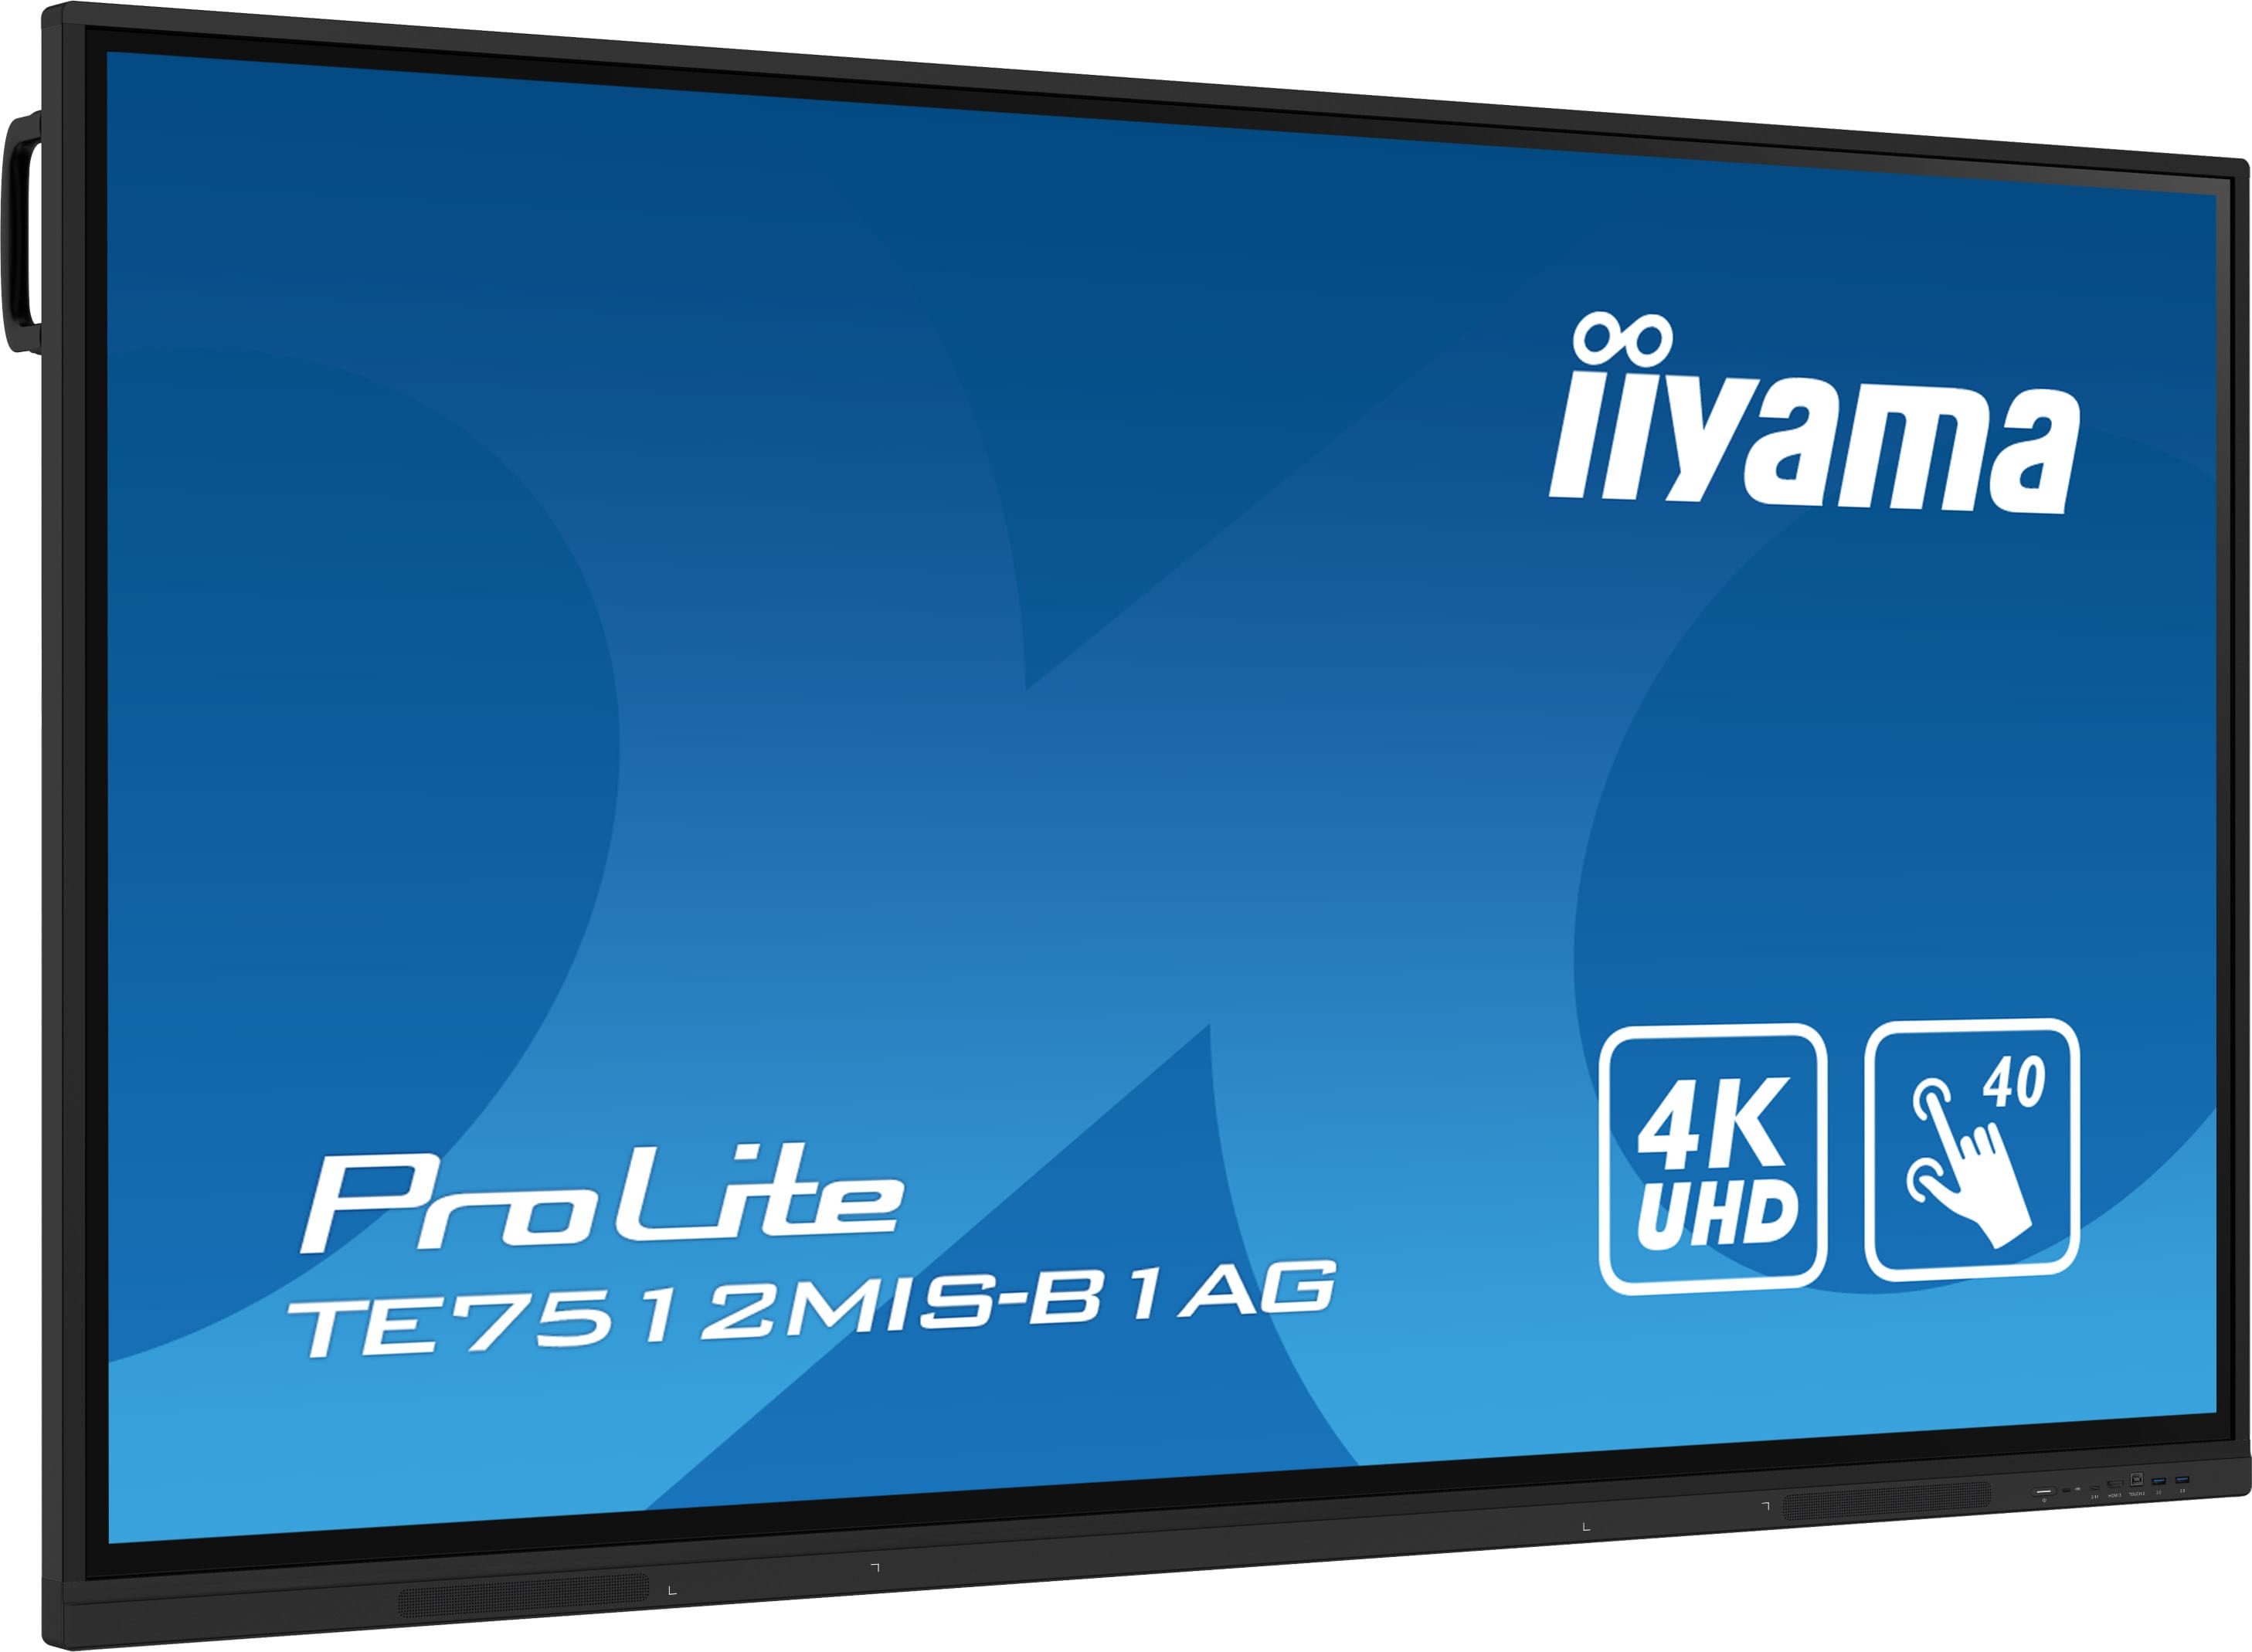 Iiyama ProLite TE7512MIS-B1AG | Interaktives 75" LCD Touchscreen-Display mit 4K-Auflösung, integrierter Whiteboard-Software und Benutzerprofilen